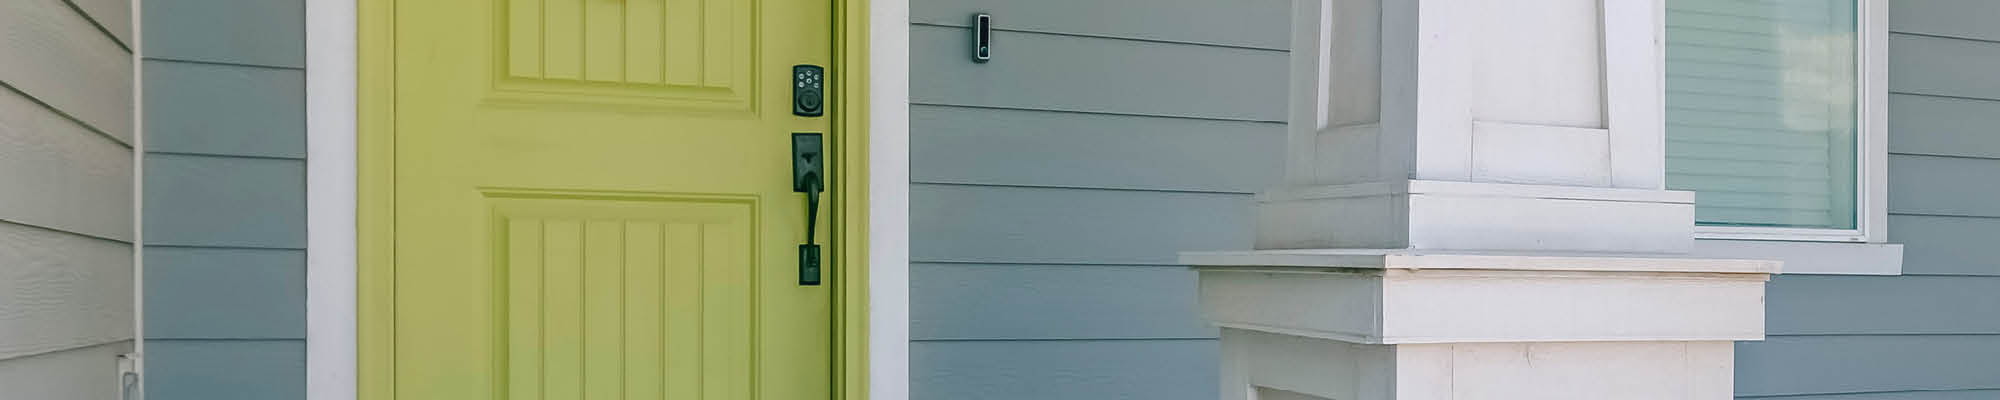 Blue House Green Door